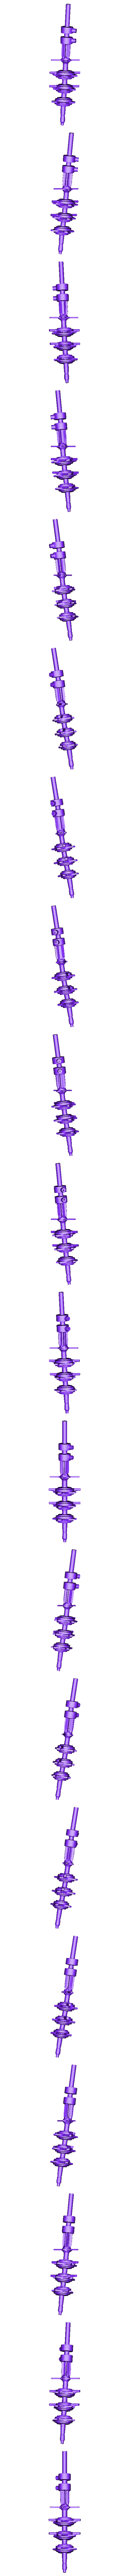 spine no heart.OBJ Файл OBJ Alita battle angel Junkyard model・Модель 3D-принтера для загрузки, paulienet